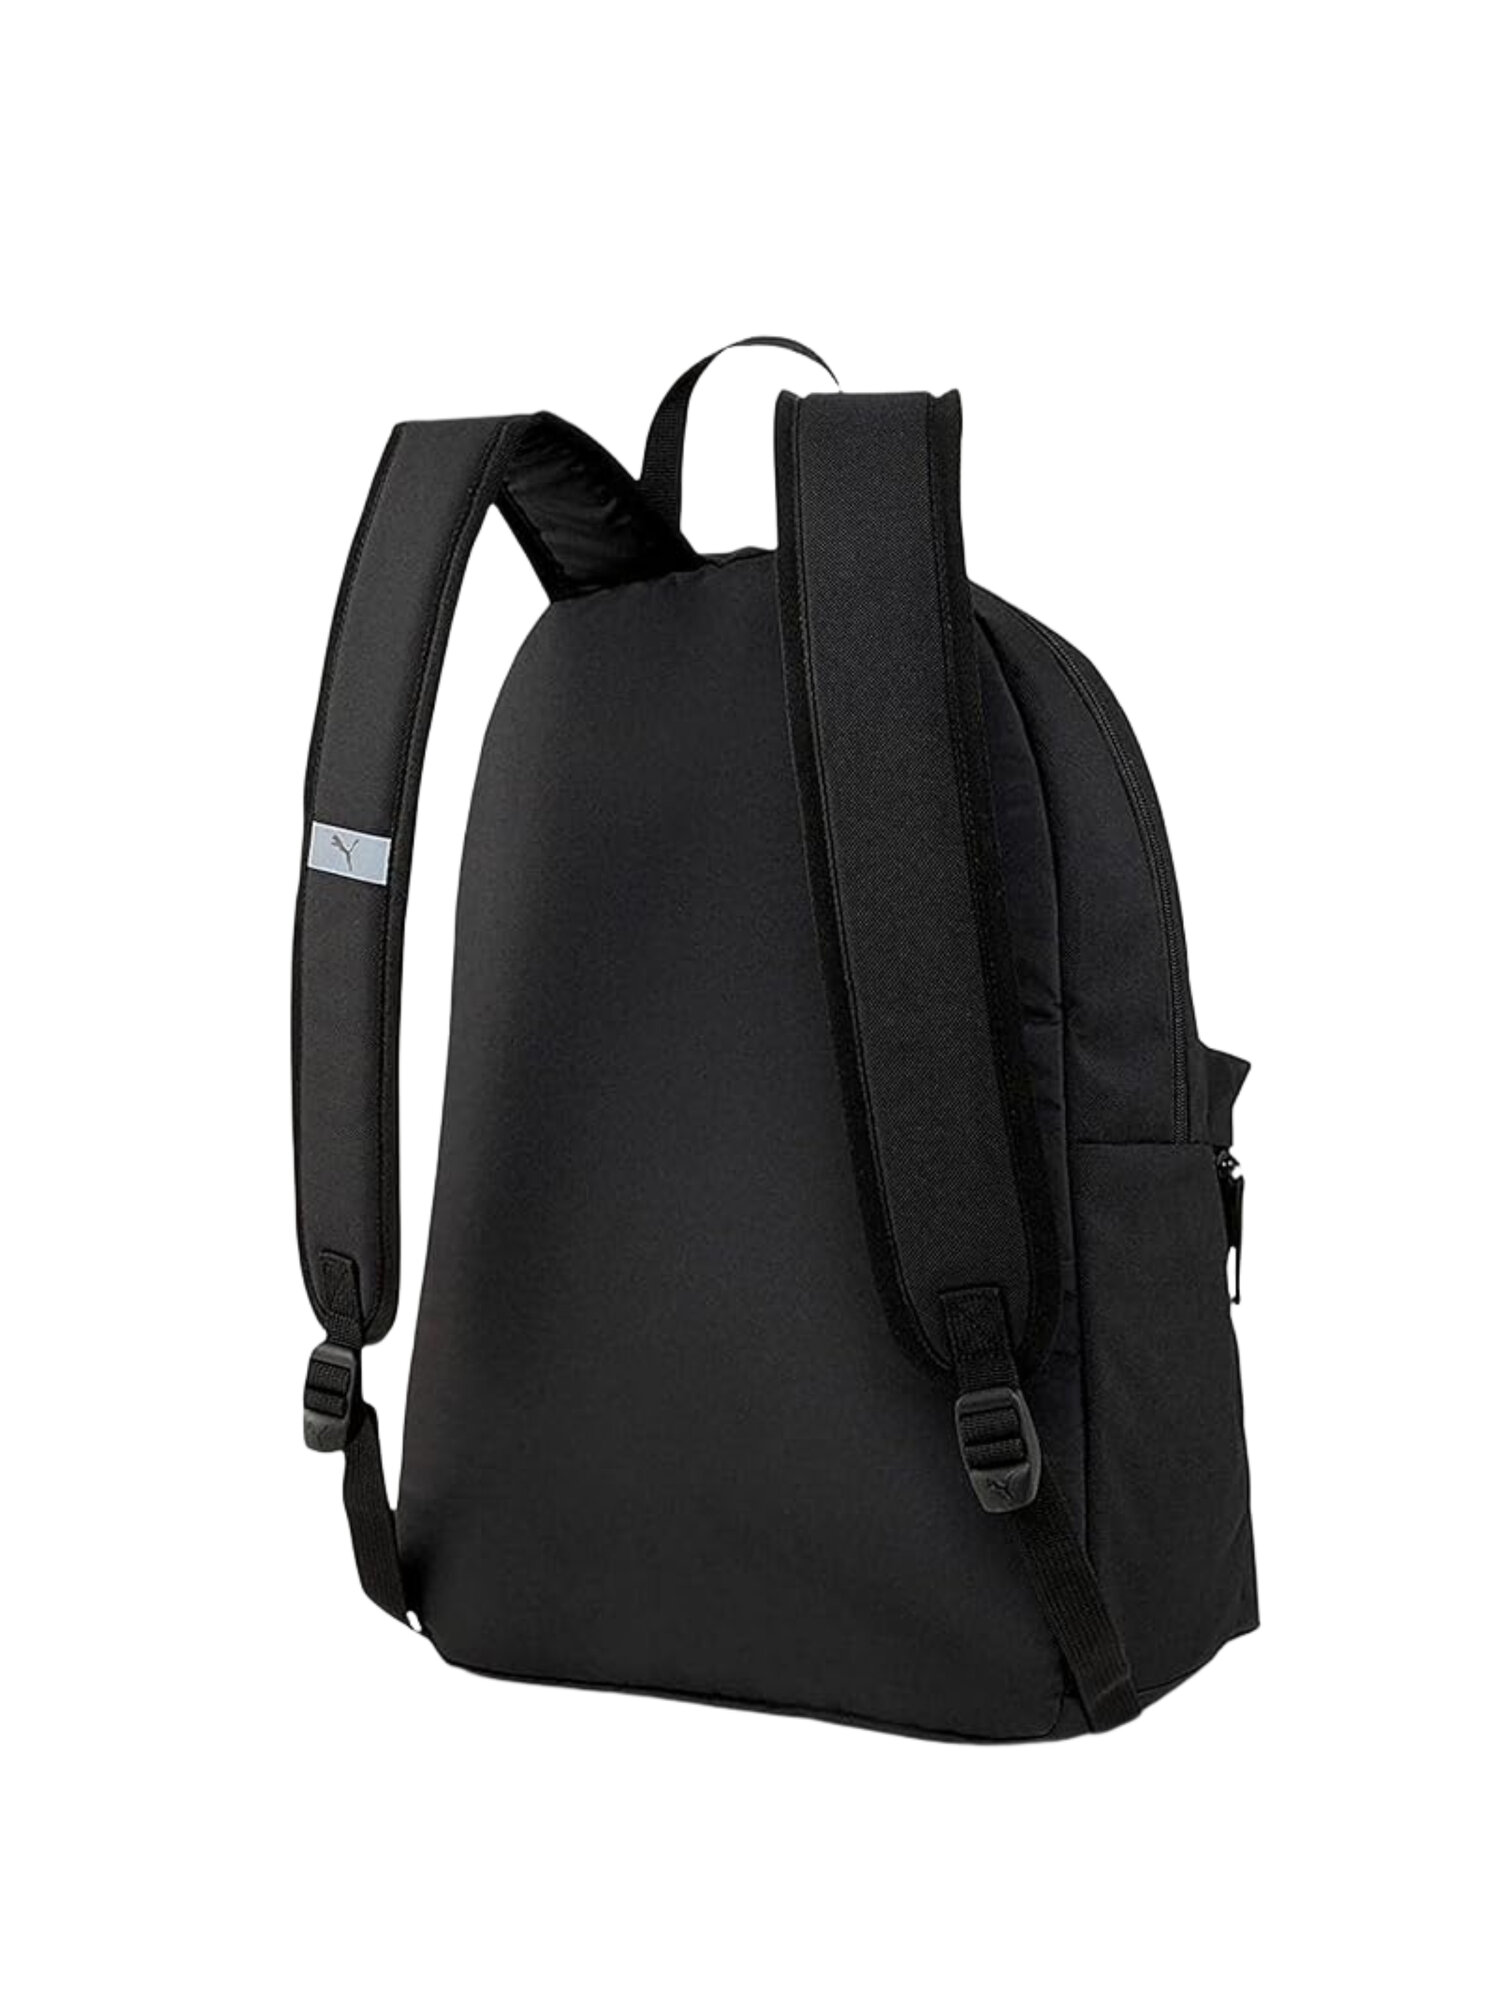 Городской рюкзак PUMA Phase Backpack Set, черный